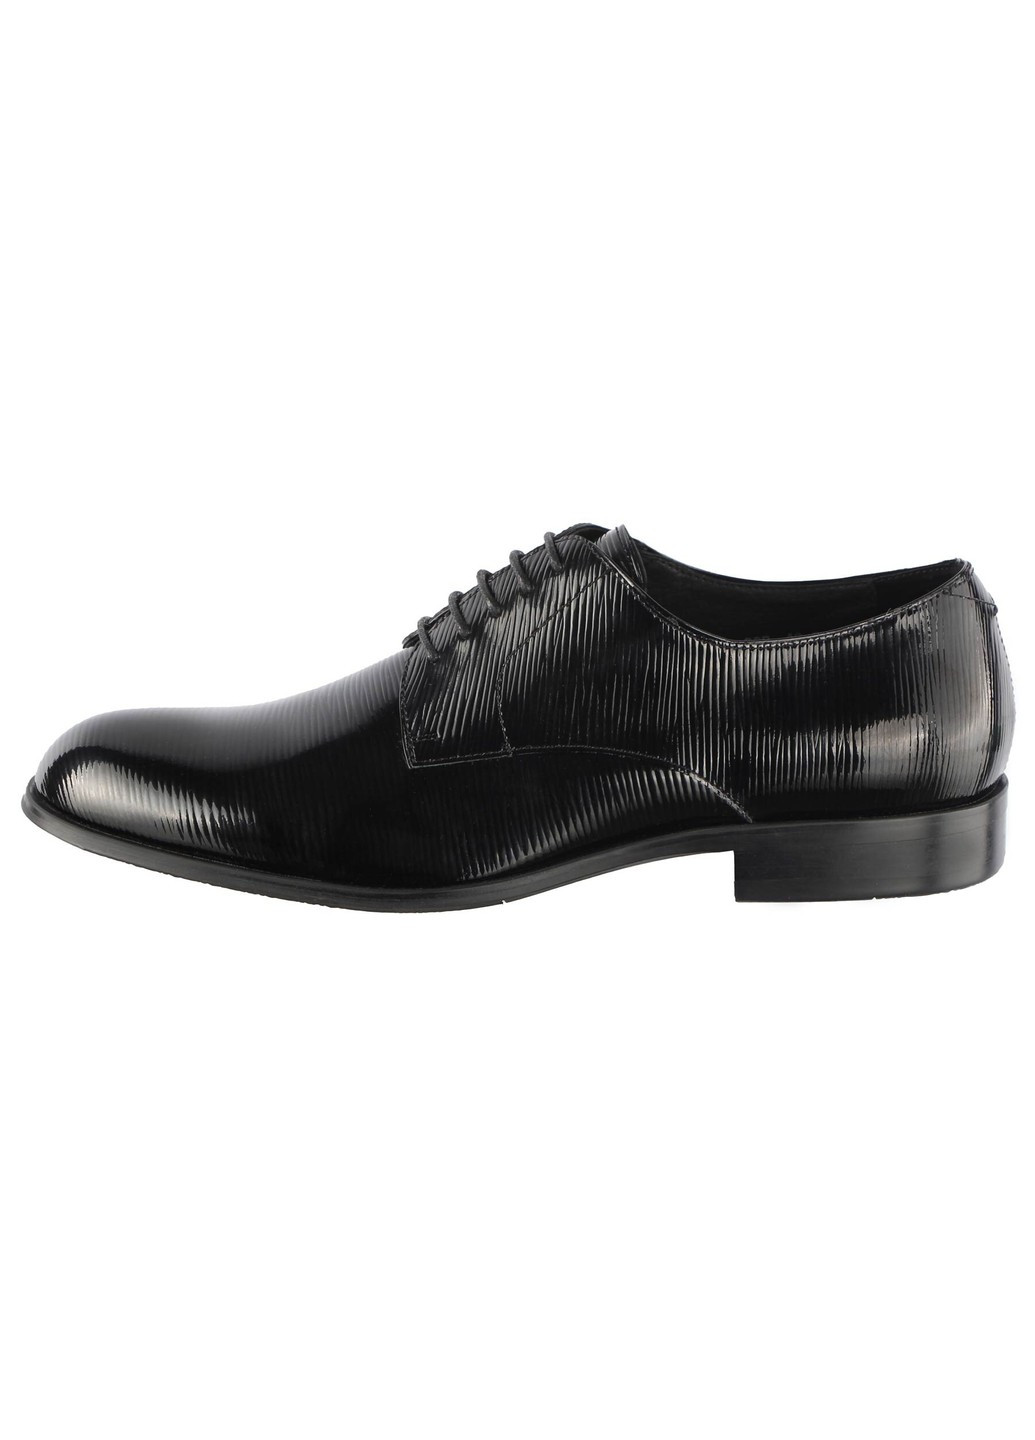 Черные мужские туфли классические 19587 Cosottinni на шнурках